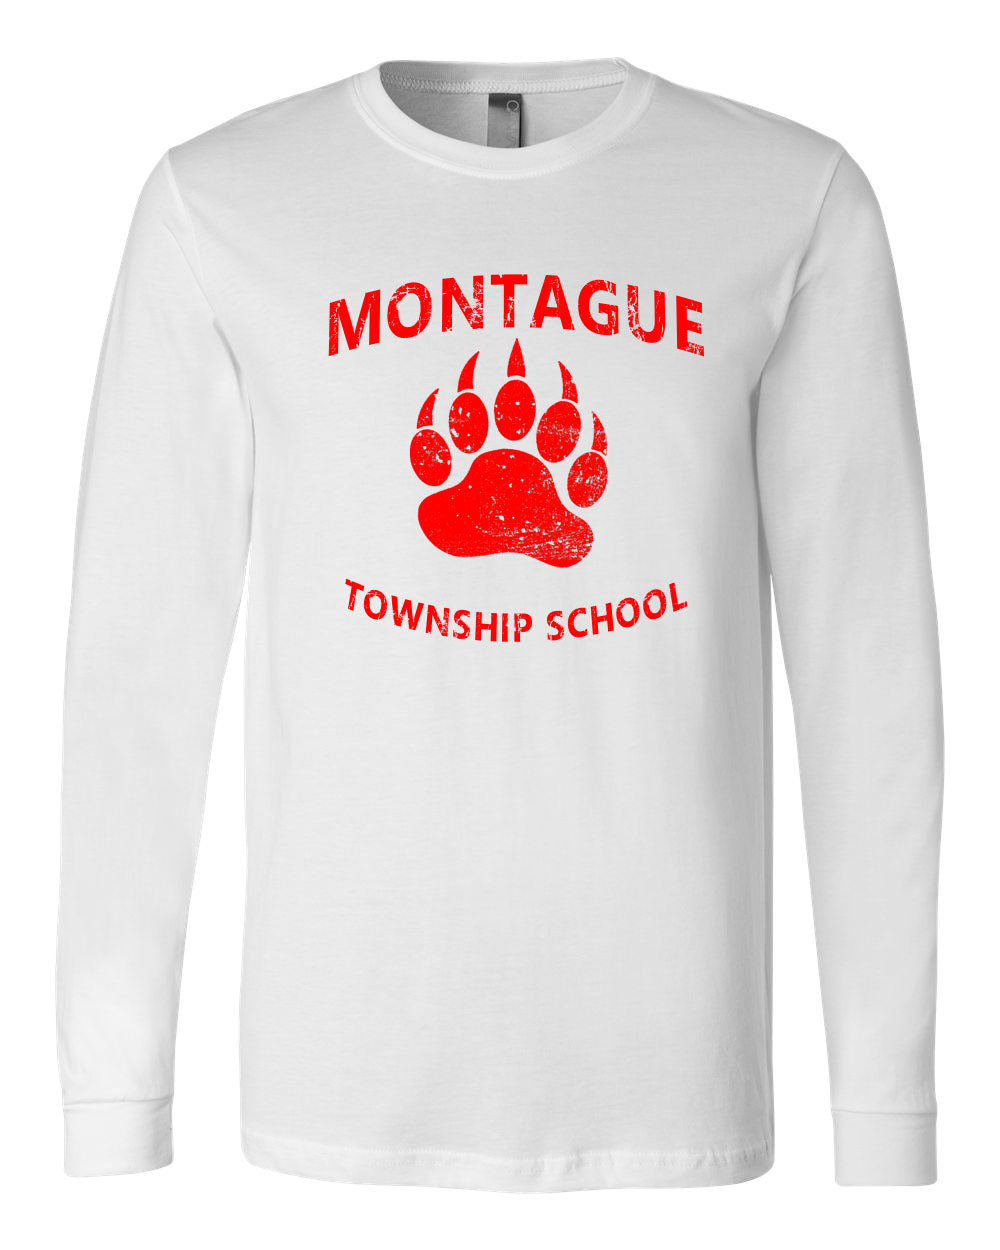 Montague Design 3 Long Sleeve Shirt